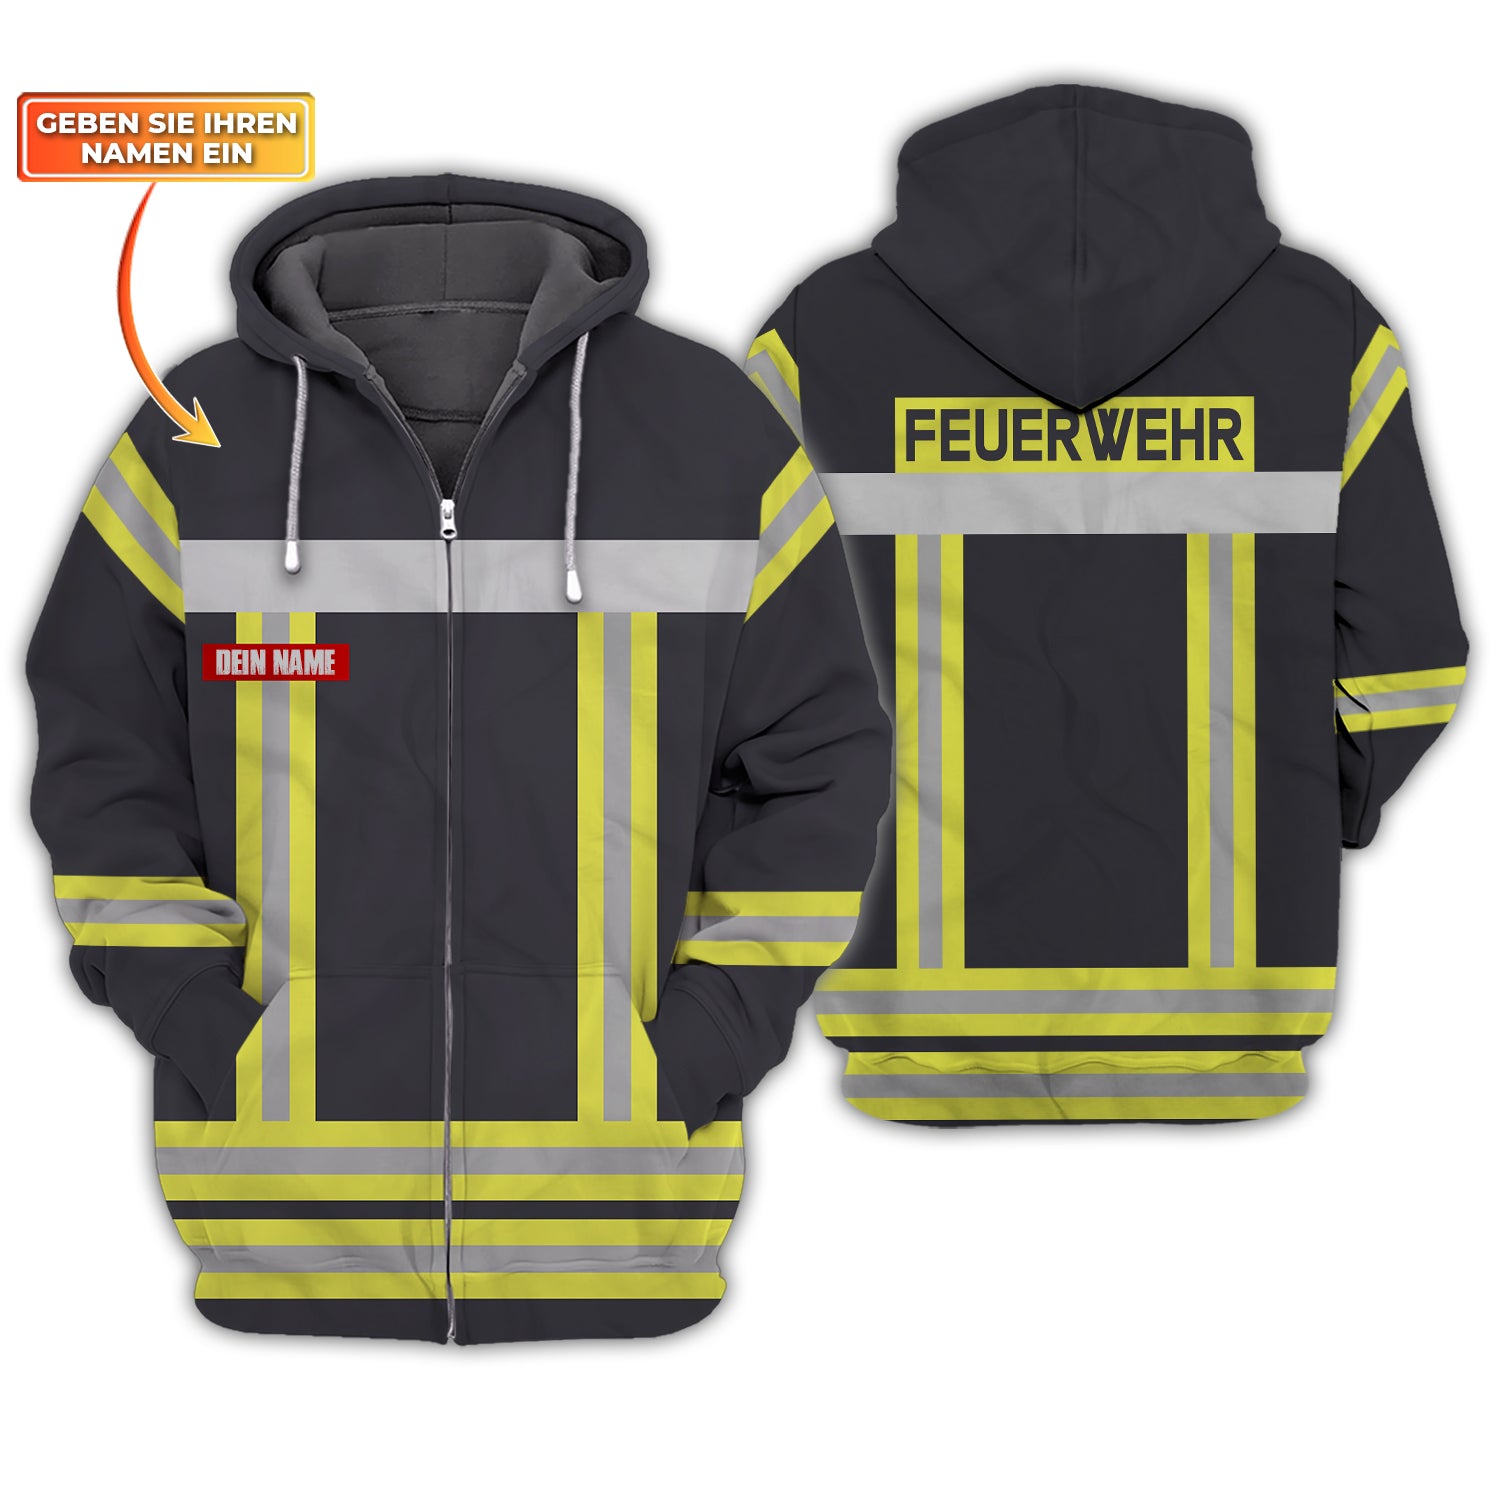 Feuerwehr - Personalized Name 3D Zipper Hoodie 09 - CV98